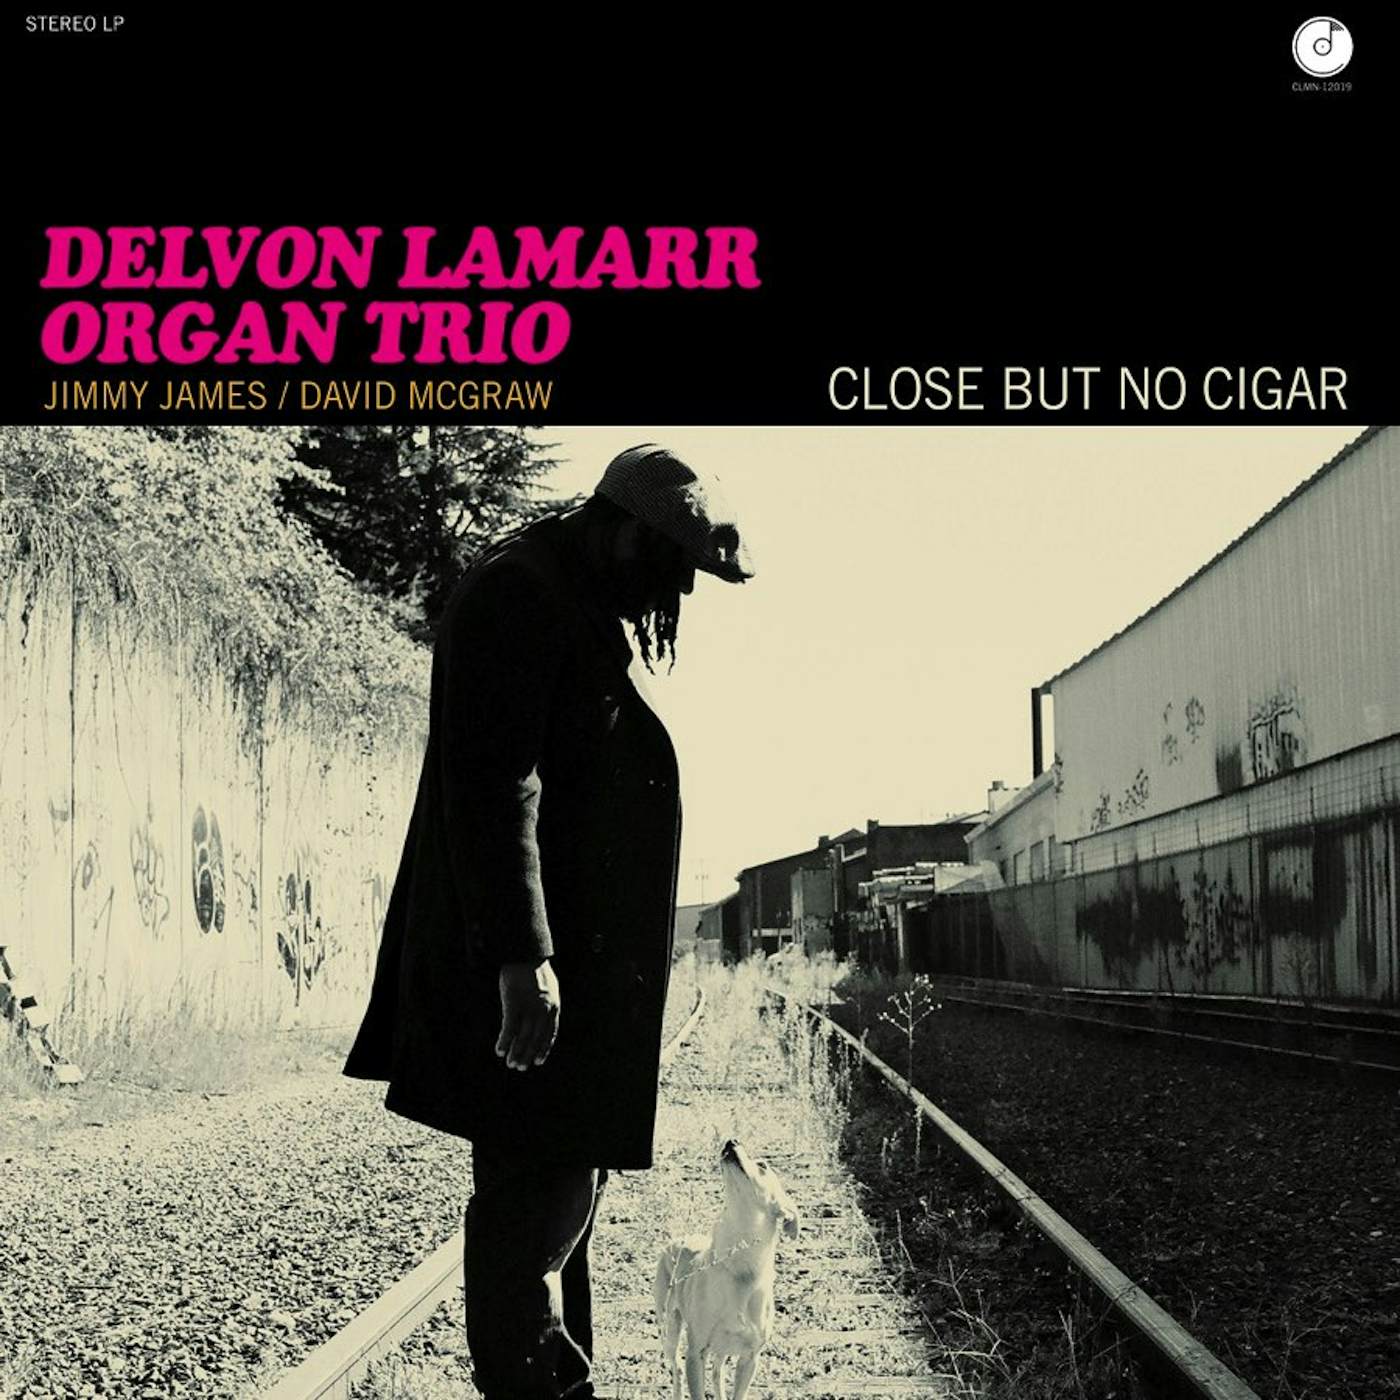 Delvon Lamarr Organ Trio CLOSE BUT NO CIGAR CD